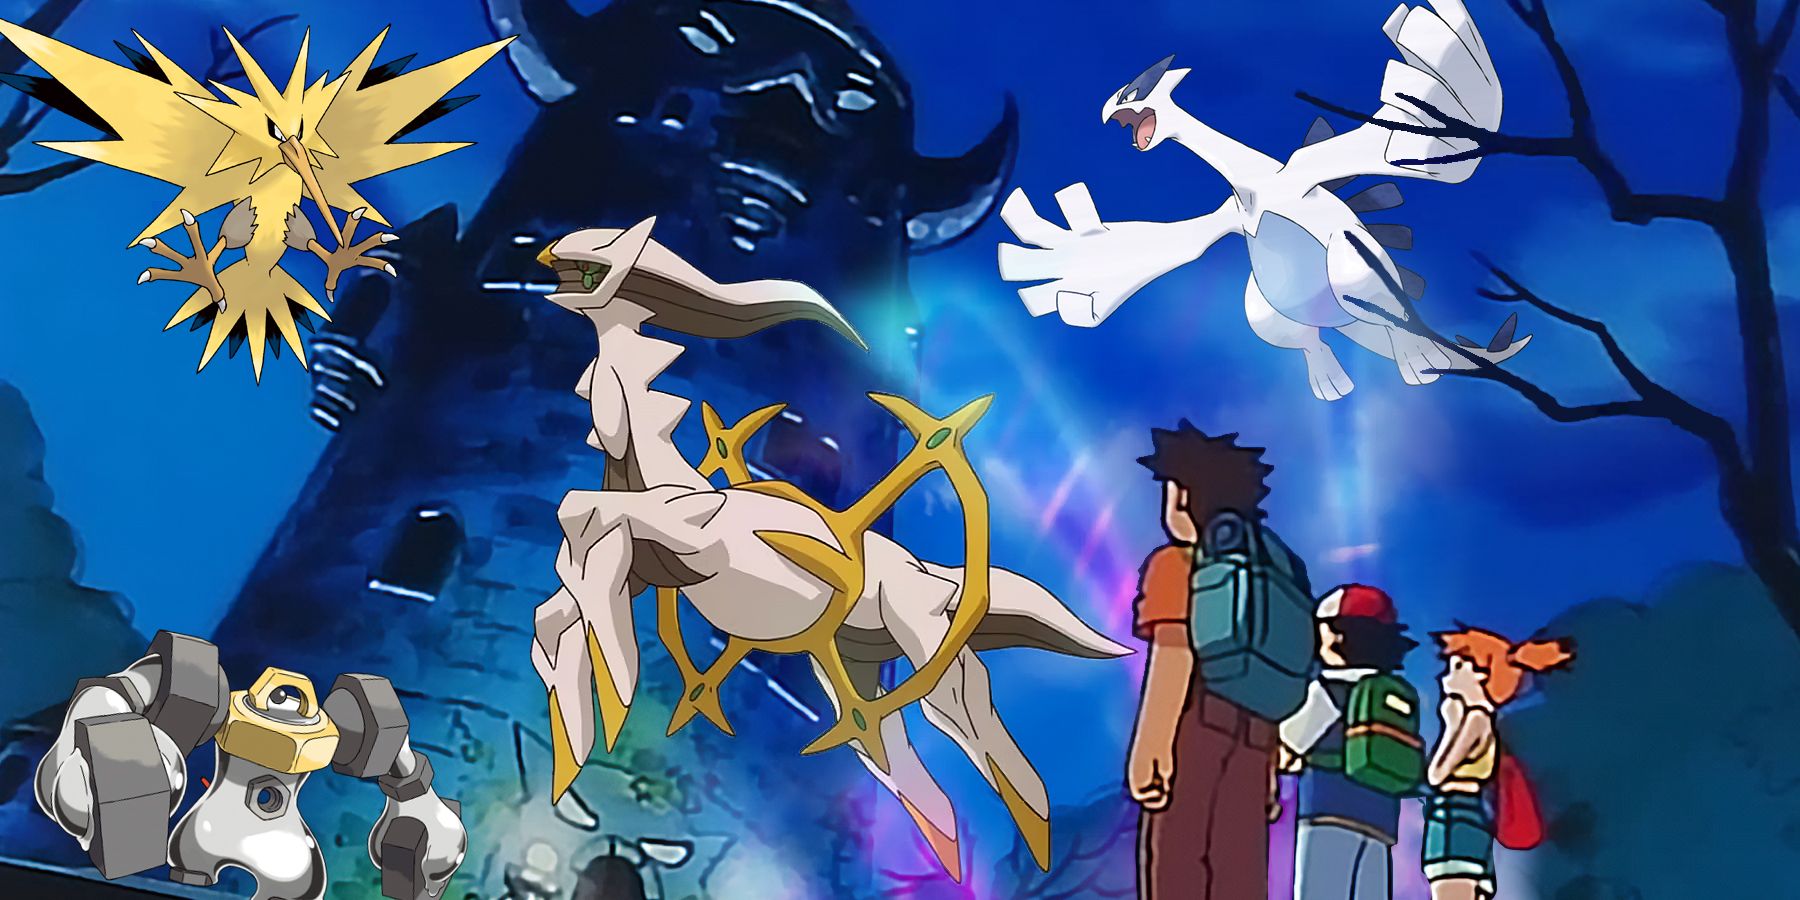 Capturing the Legendary Pokémon Regigigas in Pixelmon! Episode: 19 